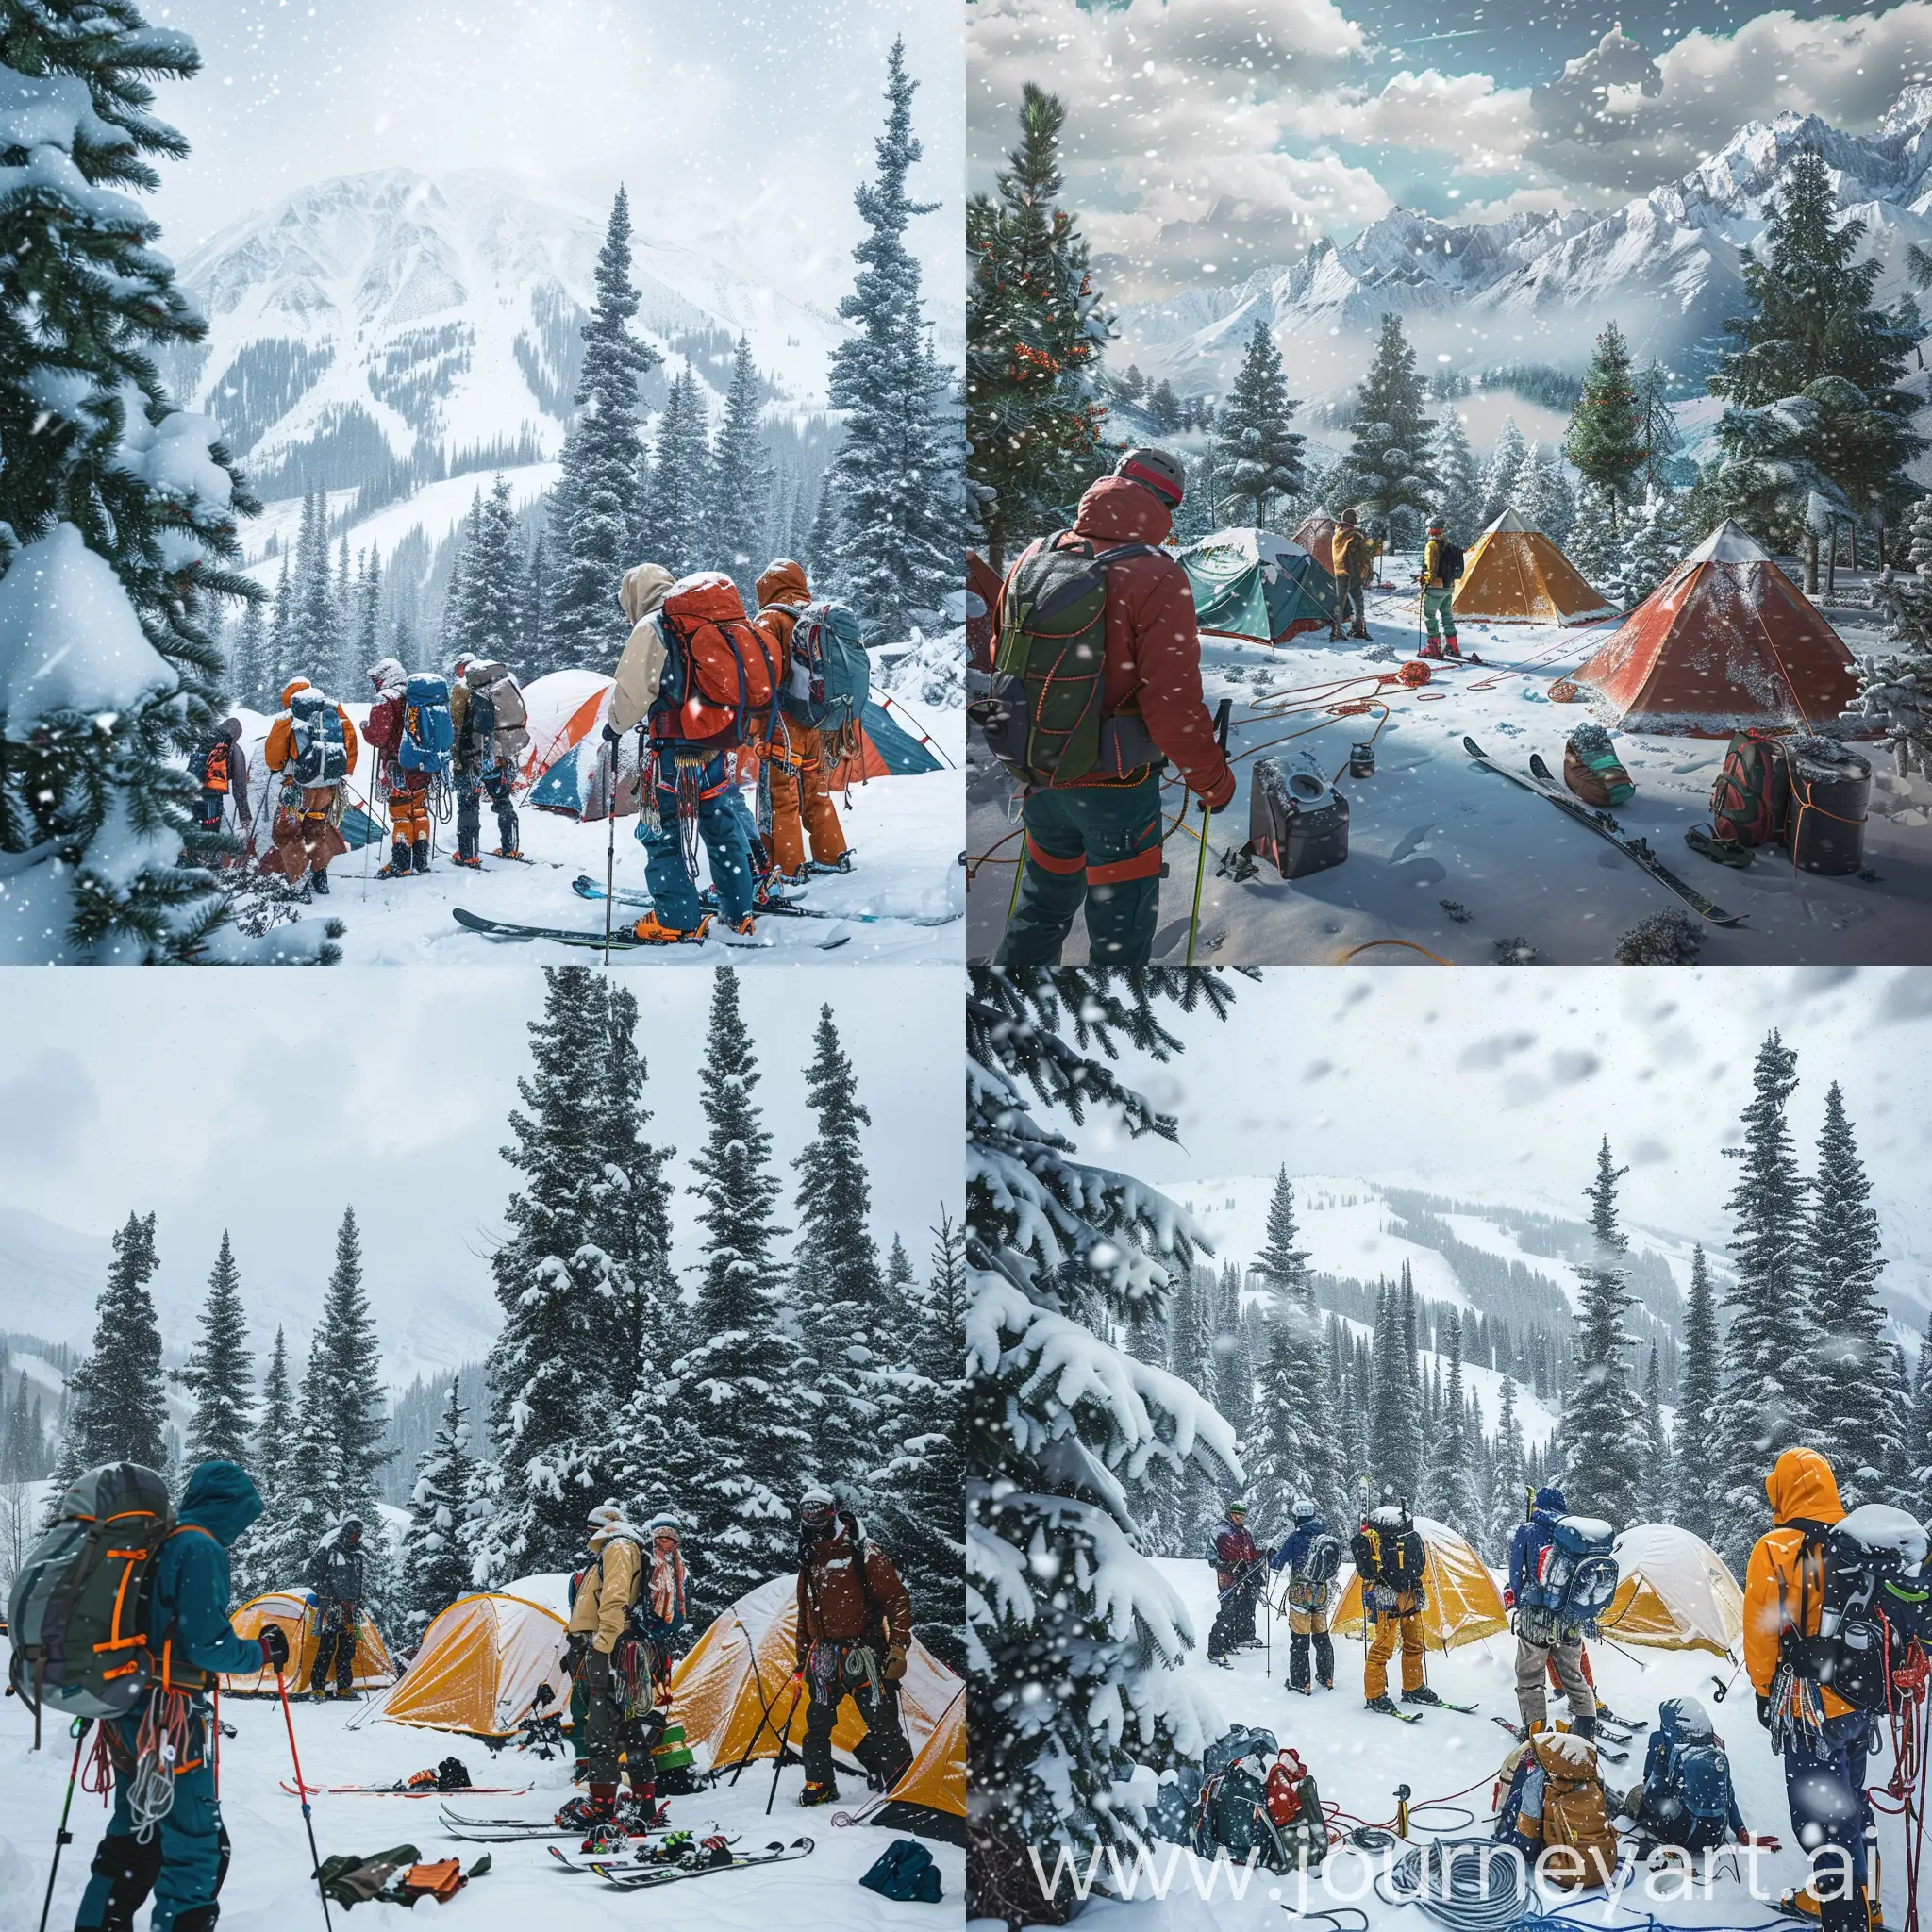 帮我设计一张实景照片，：一群户外爱好者，身上穿着专业的户外装备，绳索，冰镐，滑雪板，正在欣赏营地对面的雪山美景，露营地刚刚搭完了四五个帐篷，旁边还有松树，树上和营地上都是积雪，帐篷上面也有满满的积雪，此刻正在下雪，空中还有几朵白云